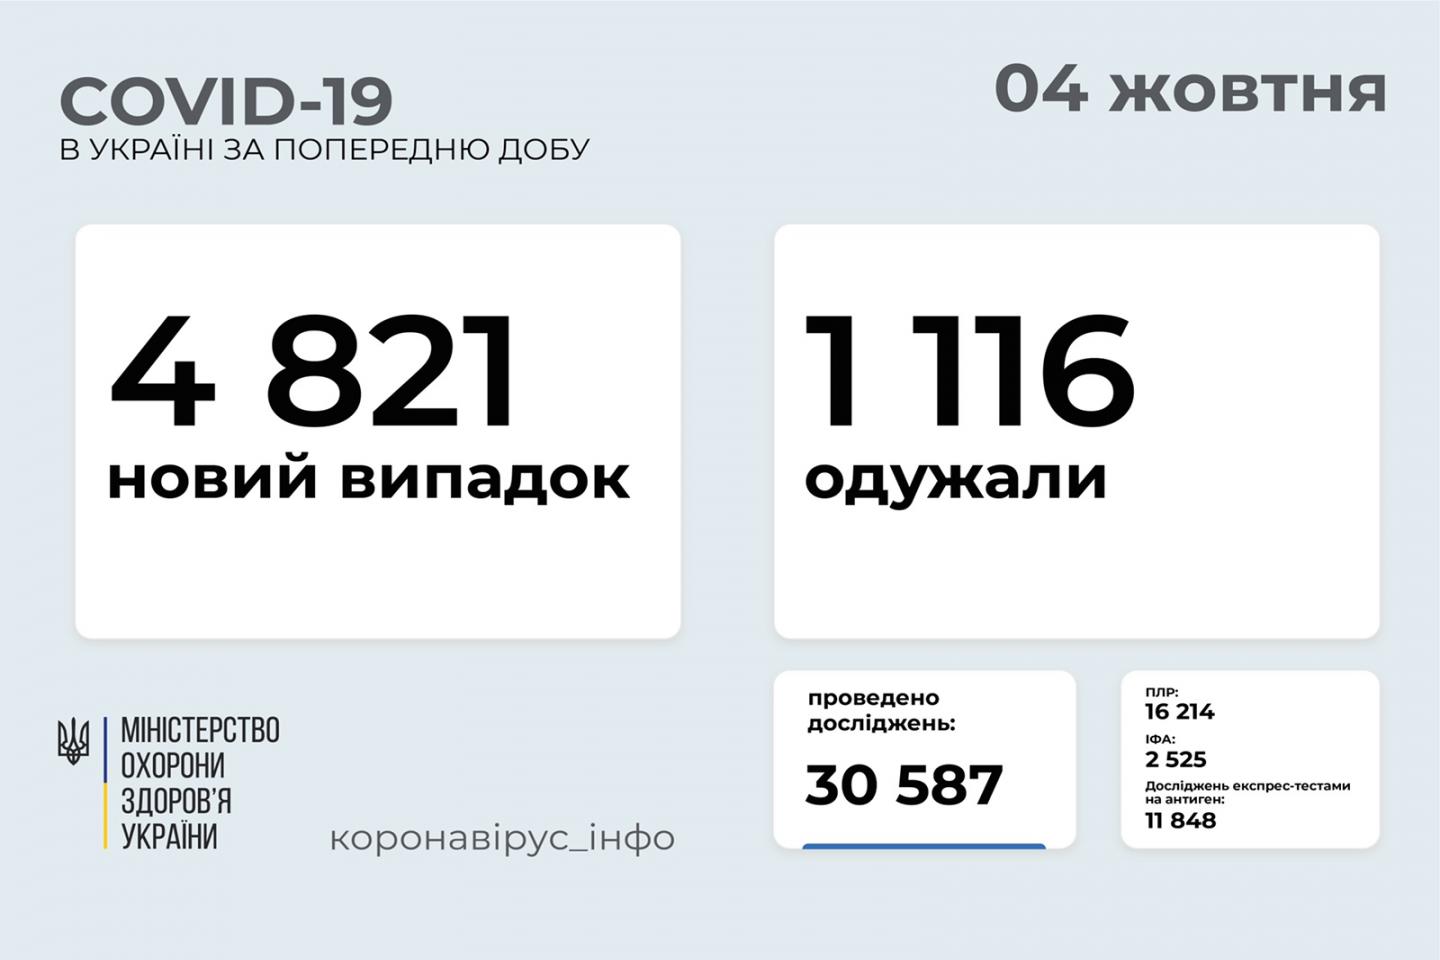 http://dunrada.gov.ua/uploadfile/archive_news/2021/10/04/2021-10-04_4087/images/images-58240.jpg